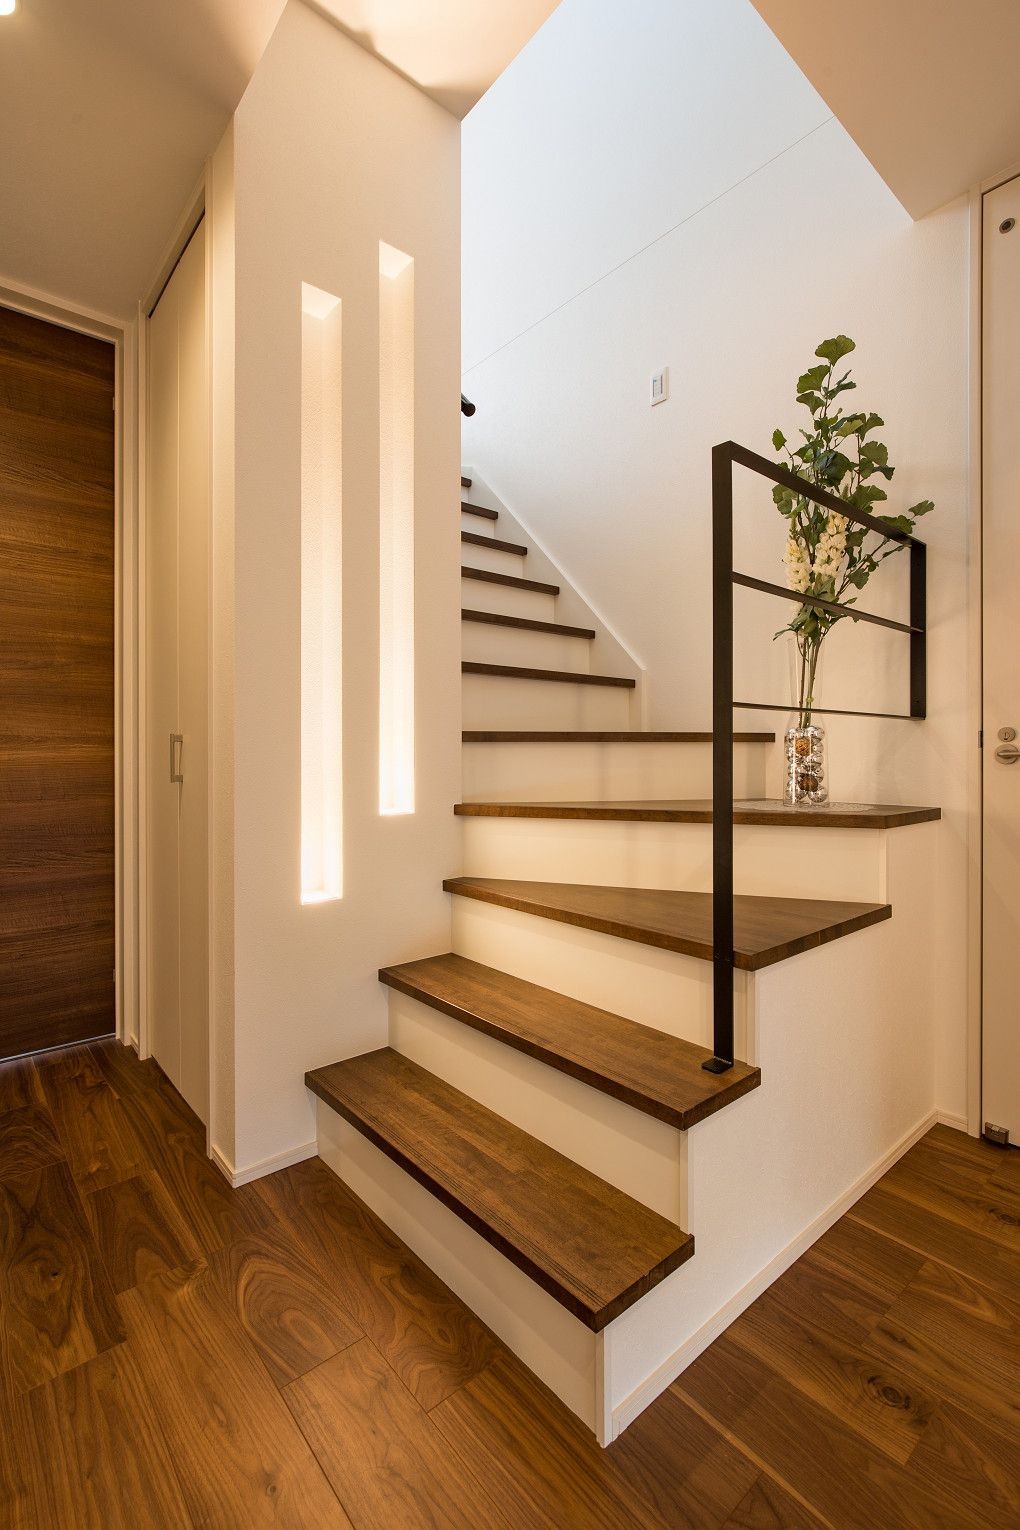 59 idées de designs d'escaliers modernes pour s'inspirer 1